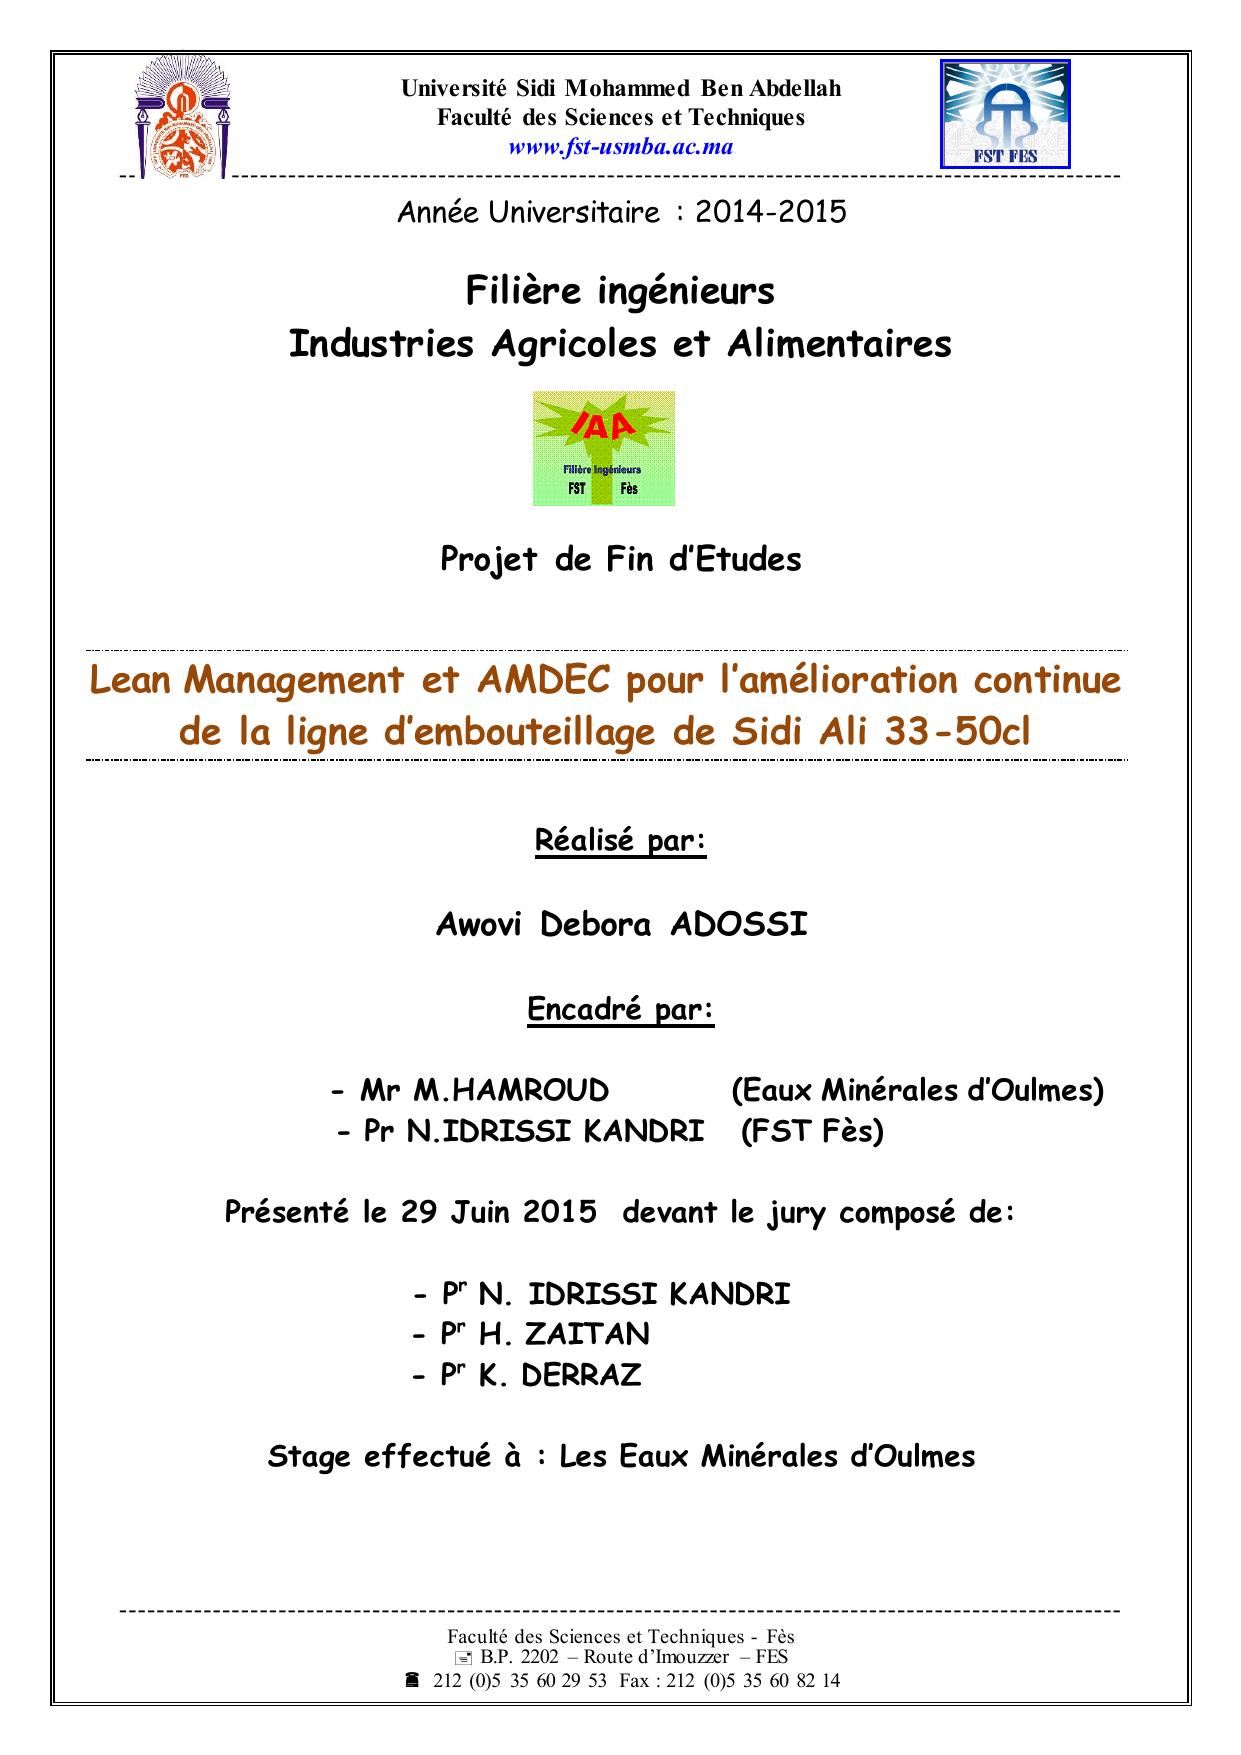 Lean Management et AMDEC pour l’amélioration continue de la ligne d’embouteillage de Sidi Ali 33-50cl